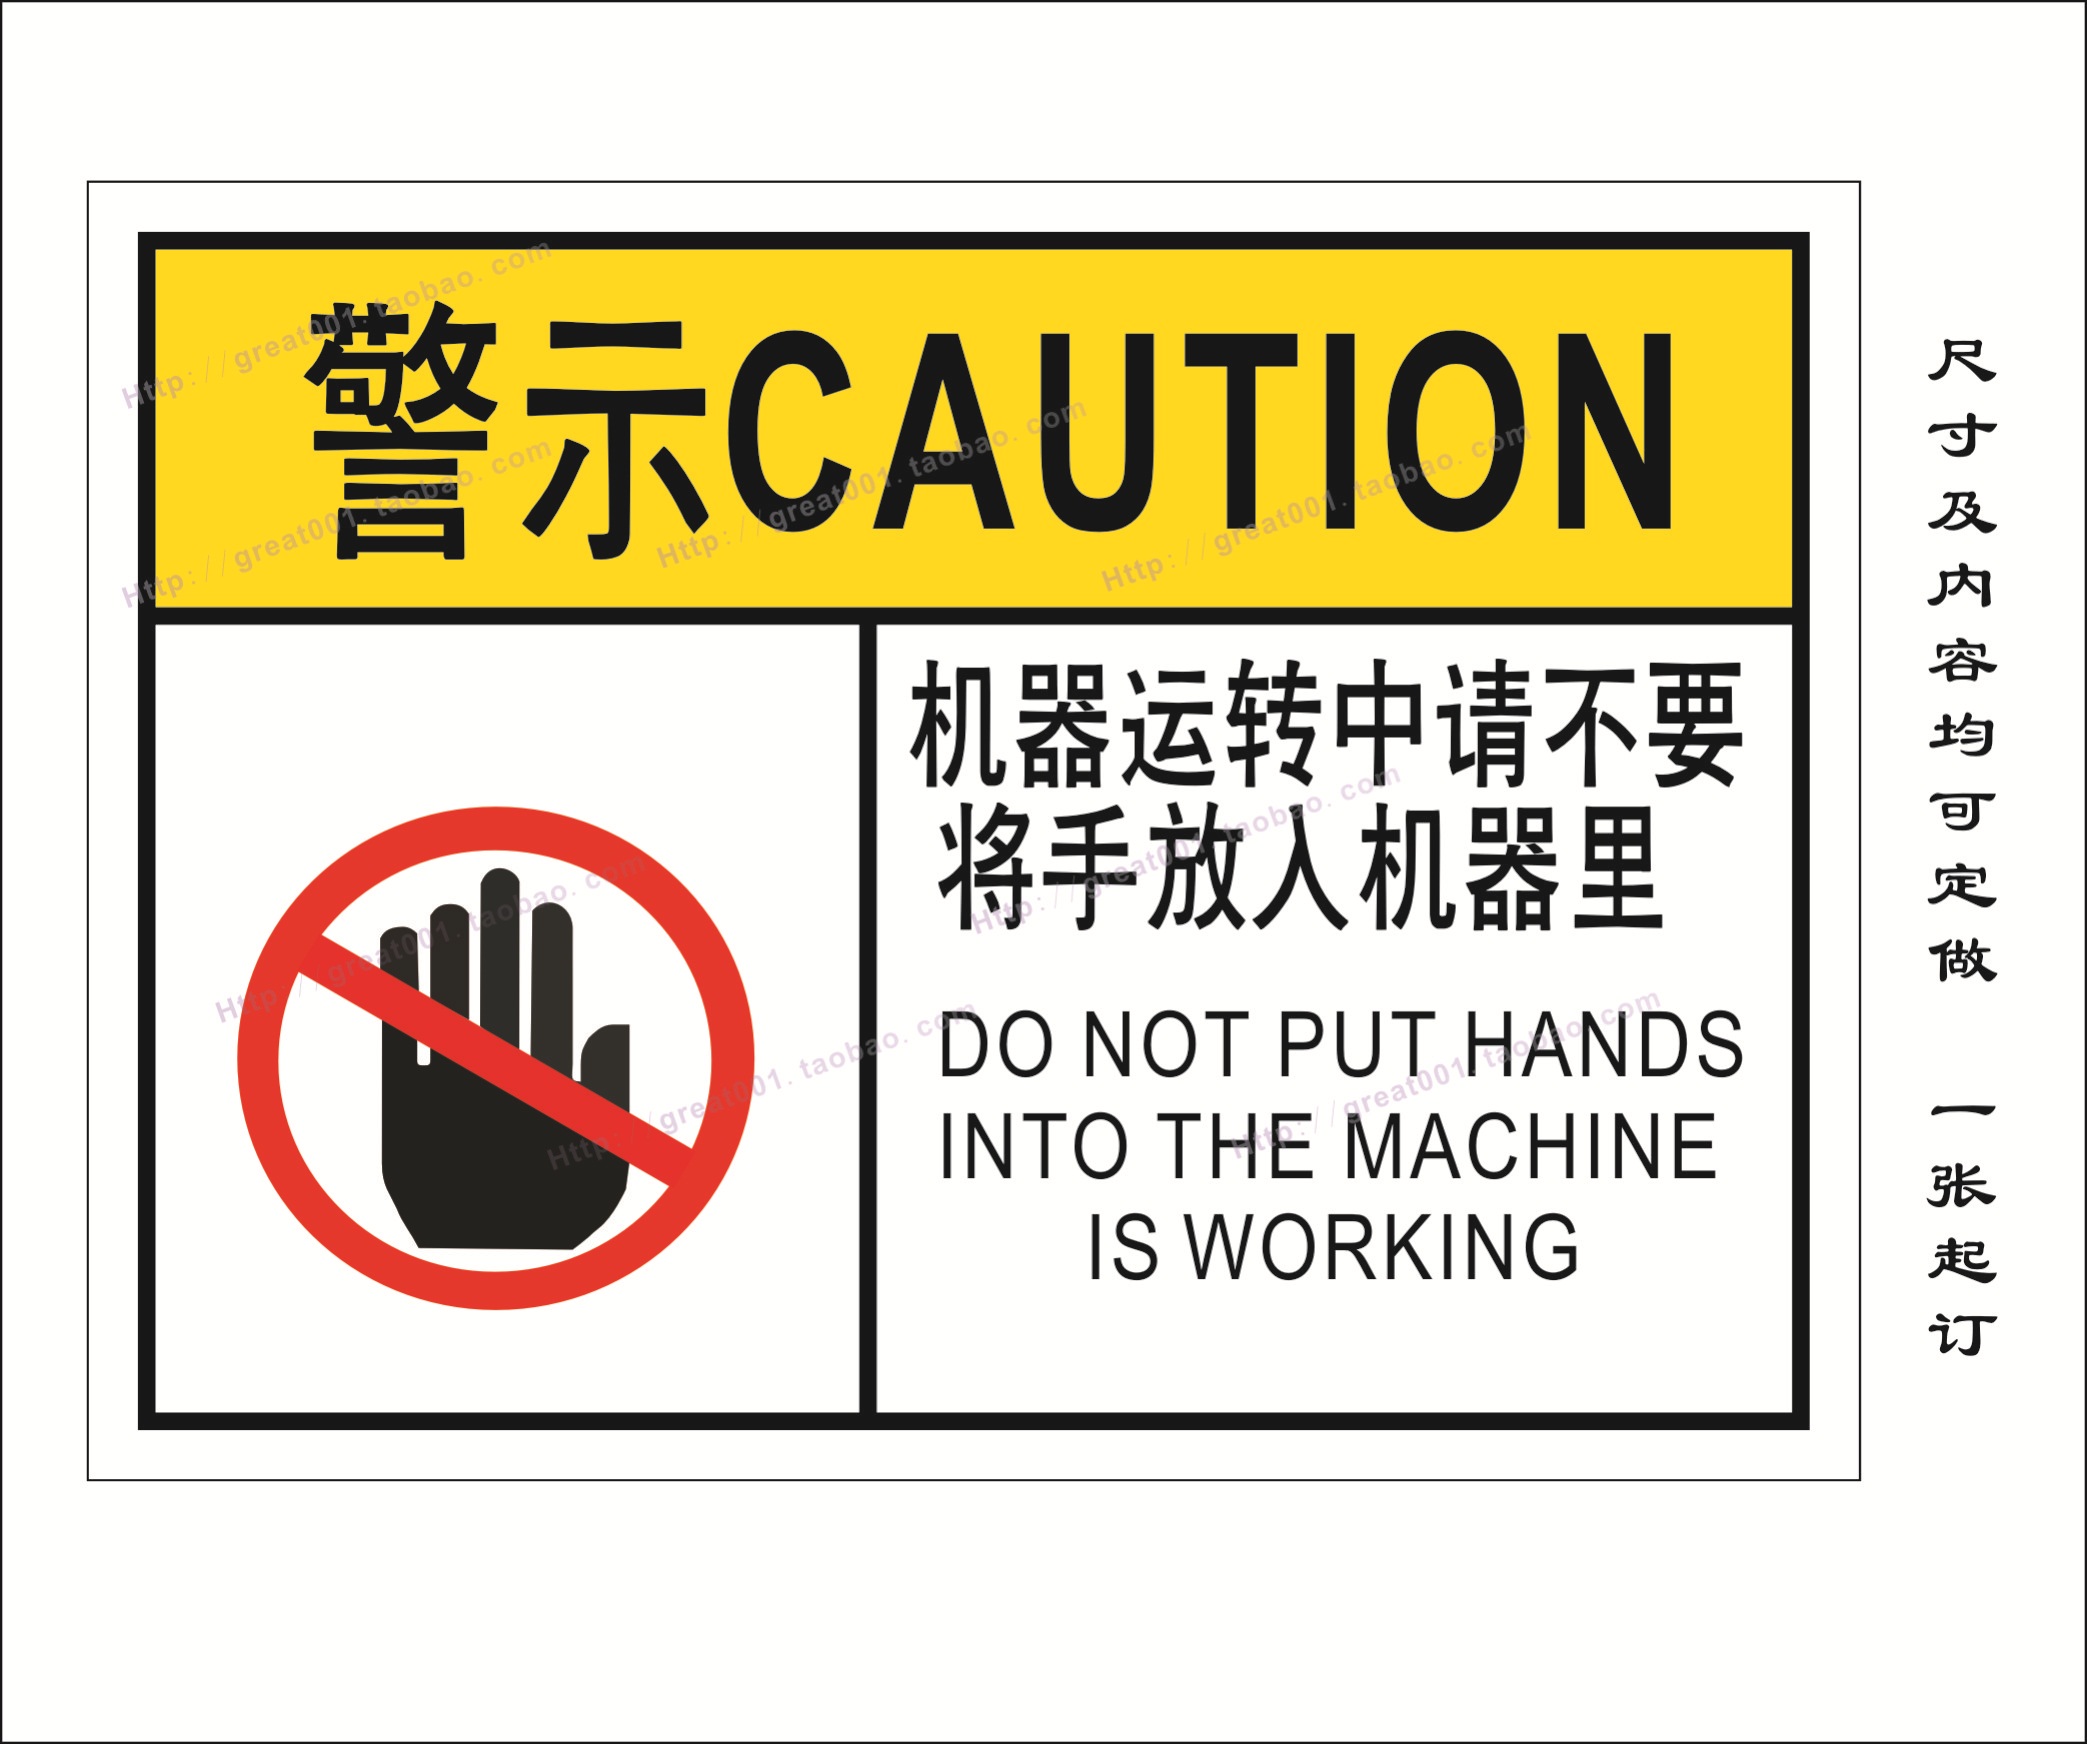 机械警示标签 机械标签 机器运行中请不要伸手 警示语 安全标贴折扣优惠信息